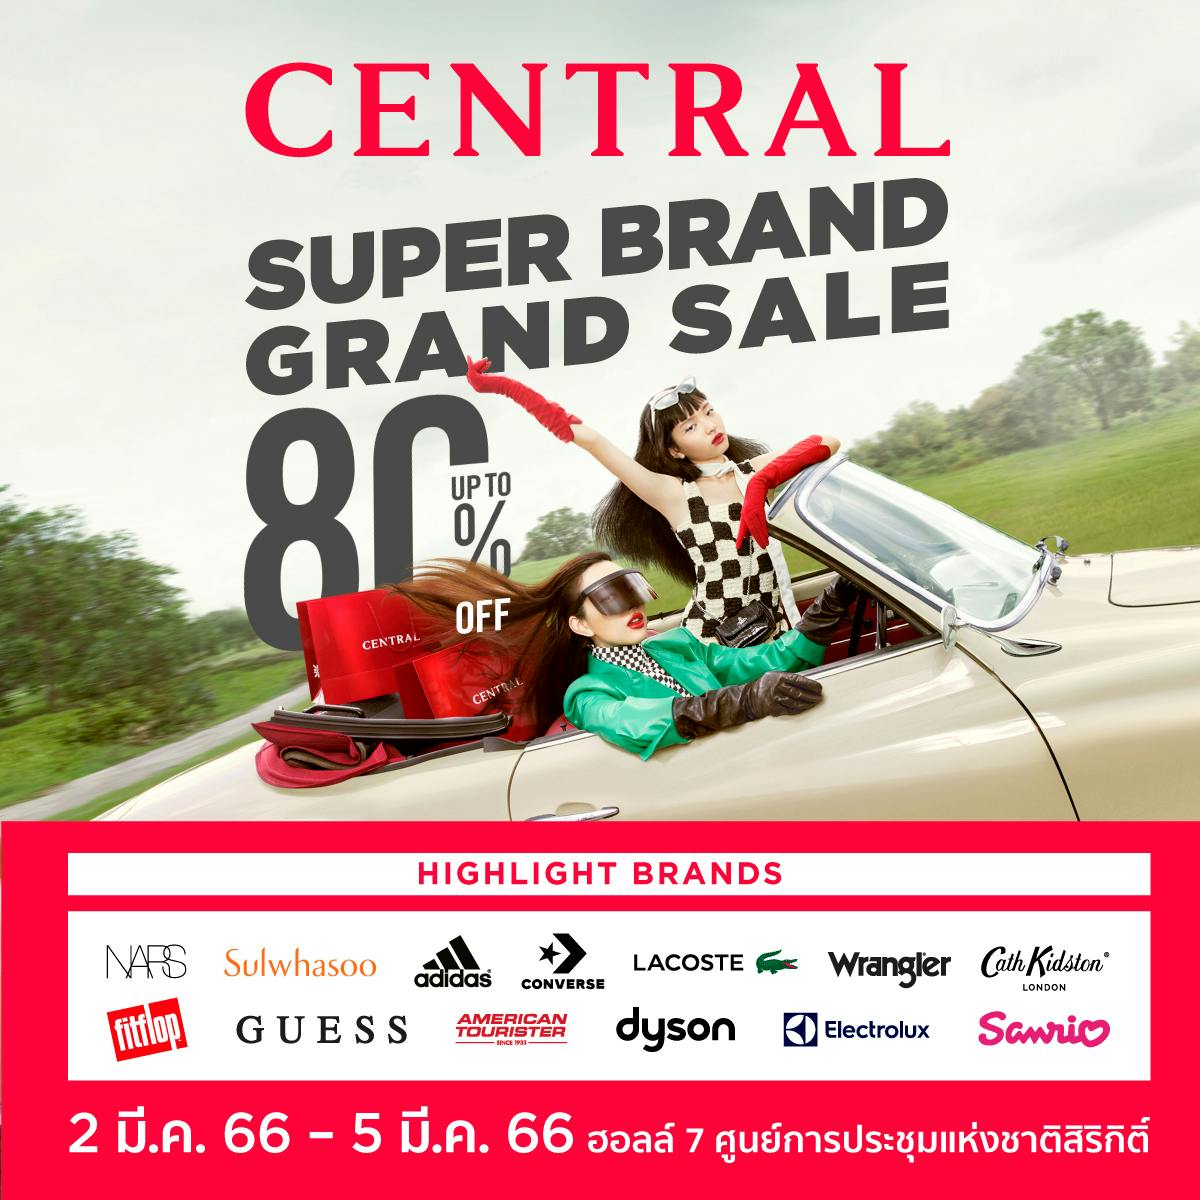 Central Super Brand Grand Sale